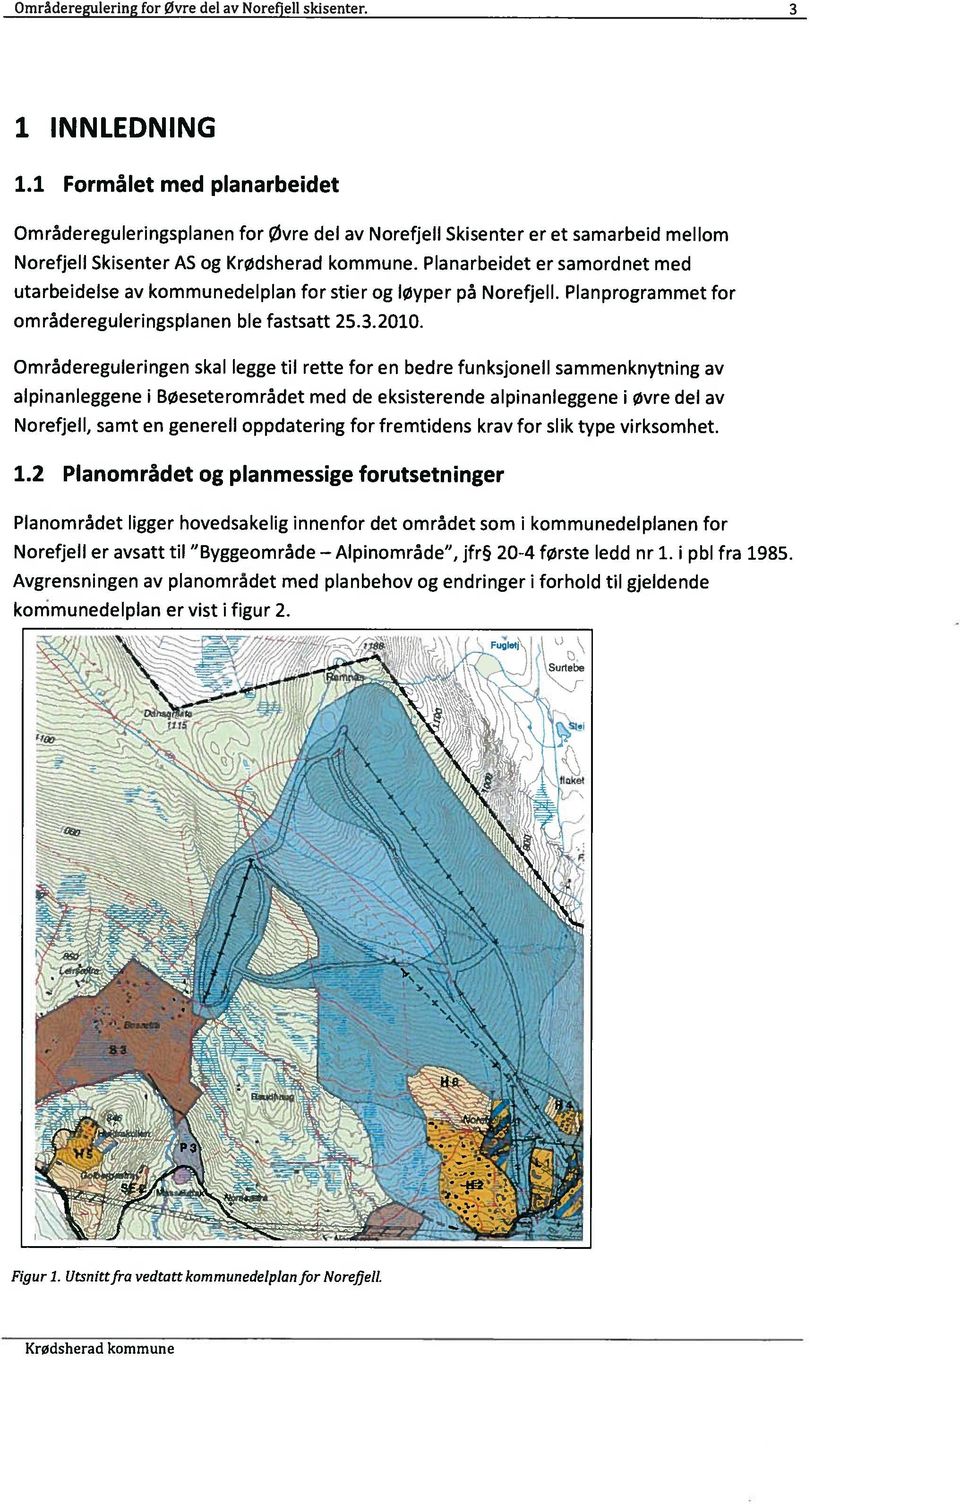 Planarbeidet er samordnet med utarbeidelse av kommunedelpian for stier og løyper på Norefjell. Planprogrammet for områdereguleringsplanen ble fastsatt 25.3.2010.